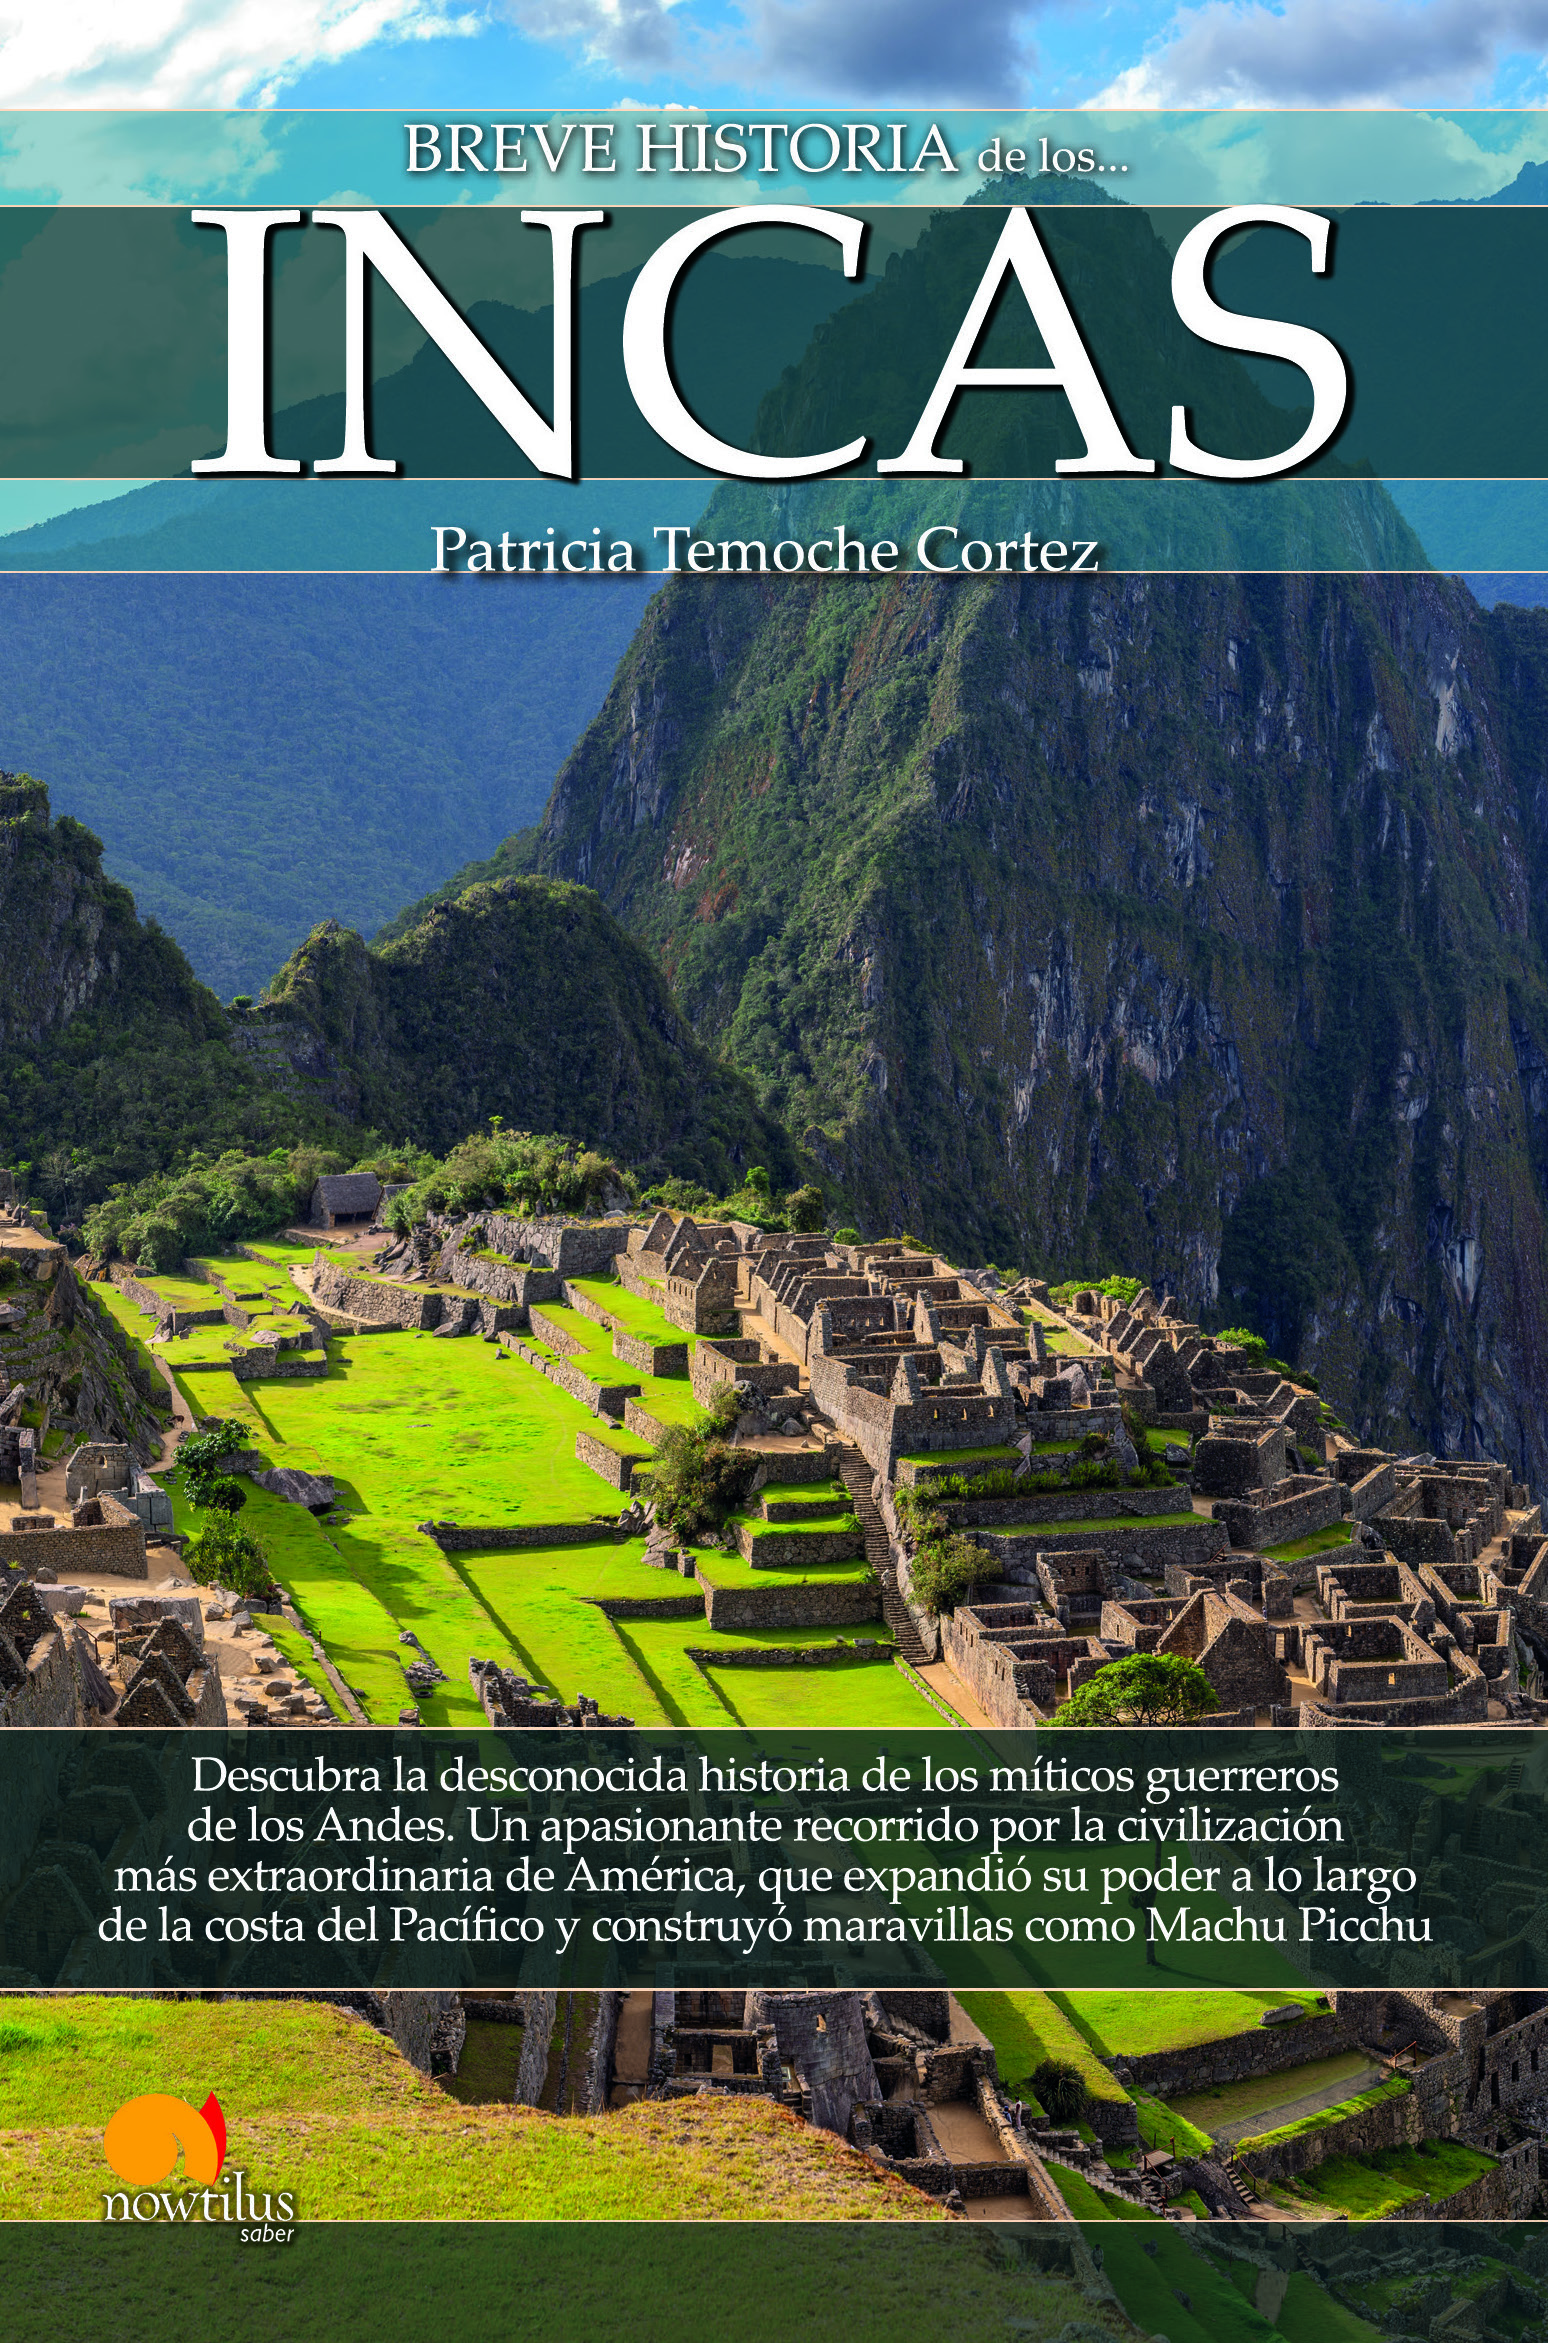 Breve historia de los incas n. e.